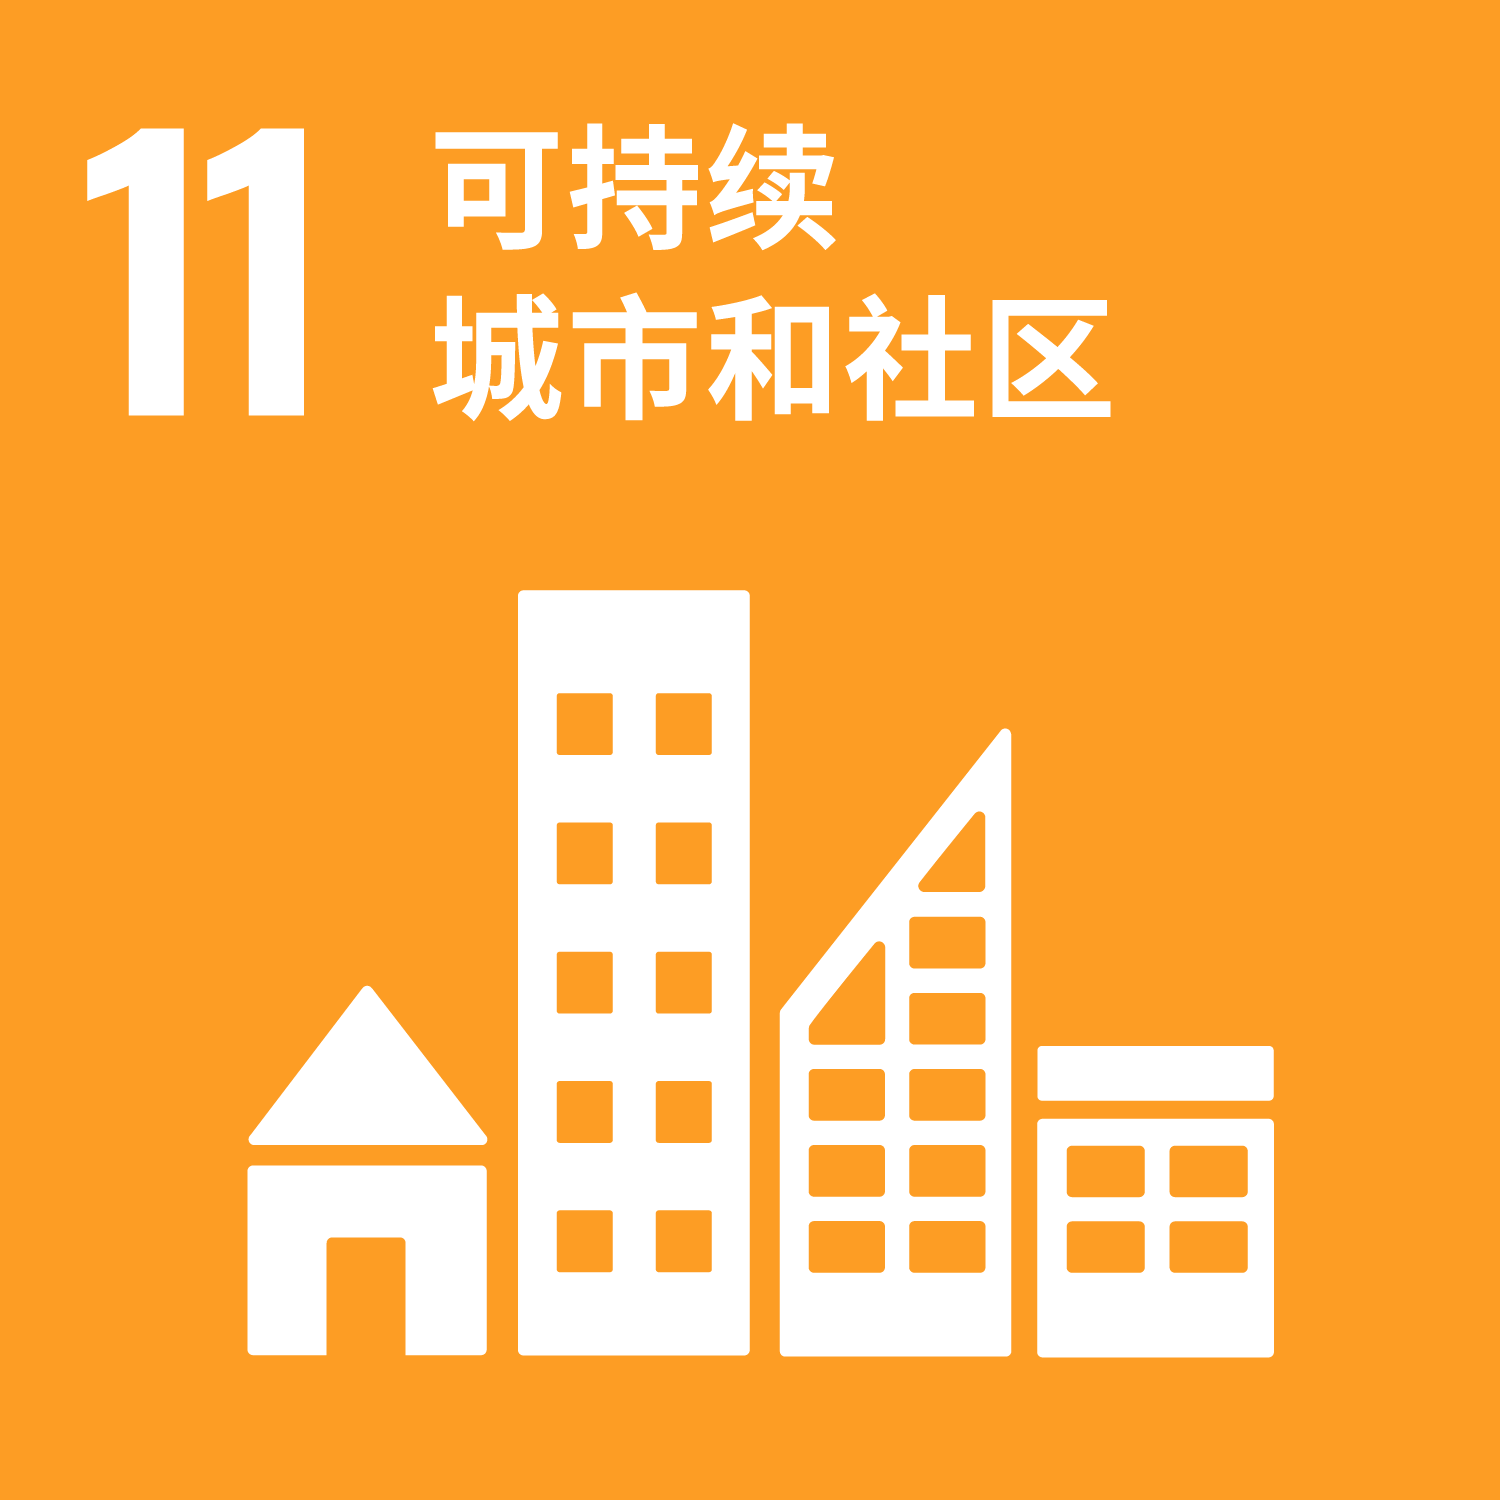 11 建设可持续居住的城市